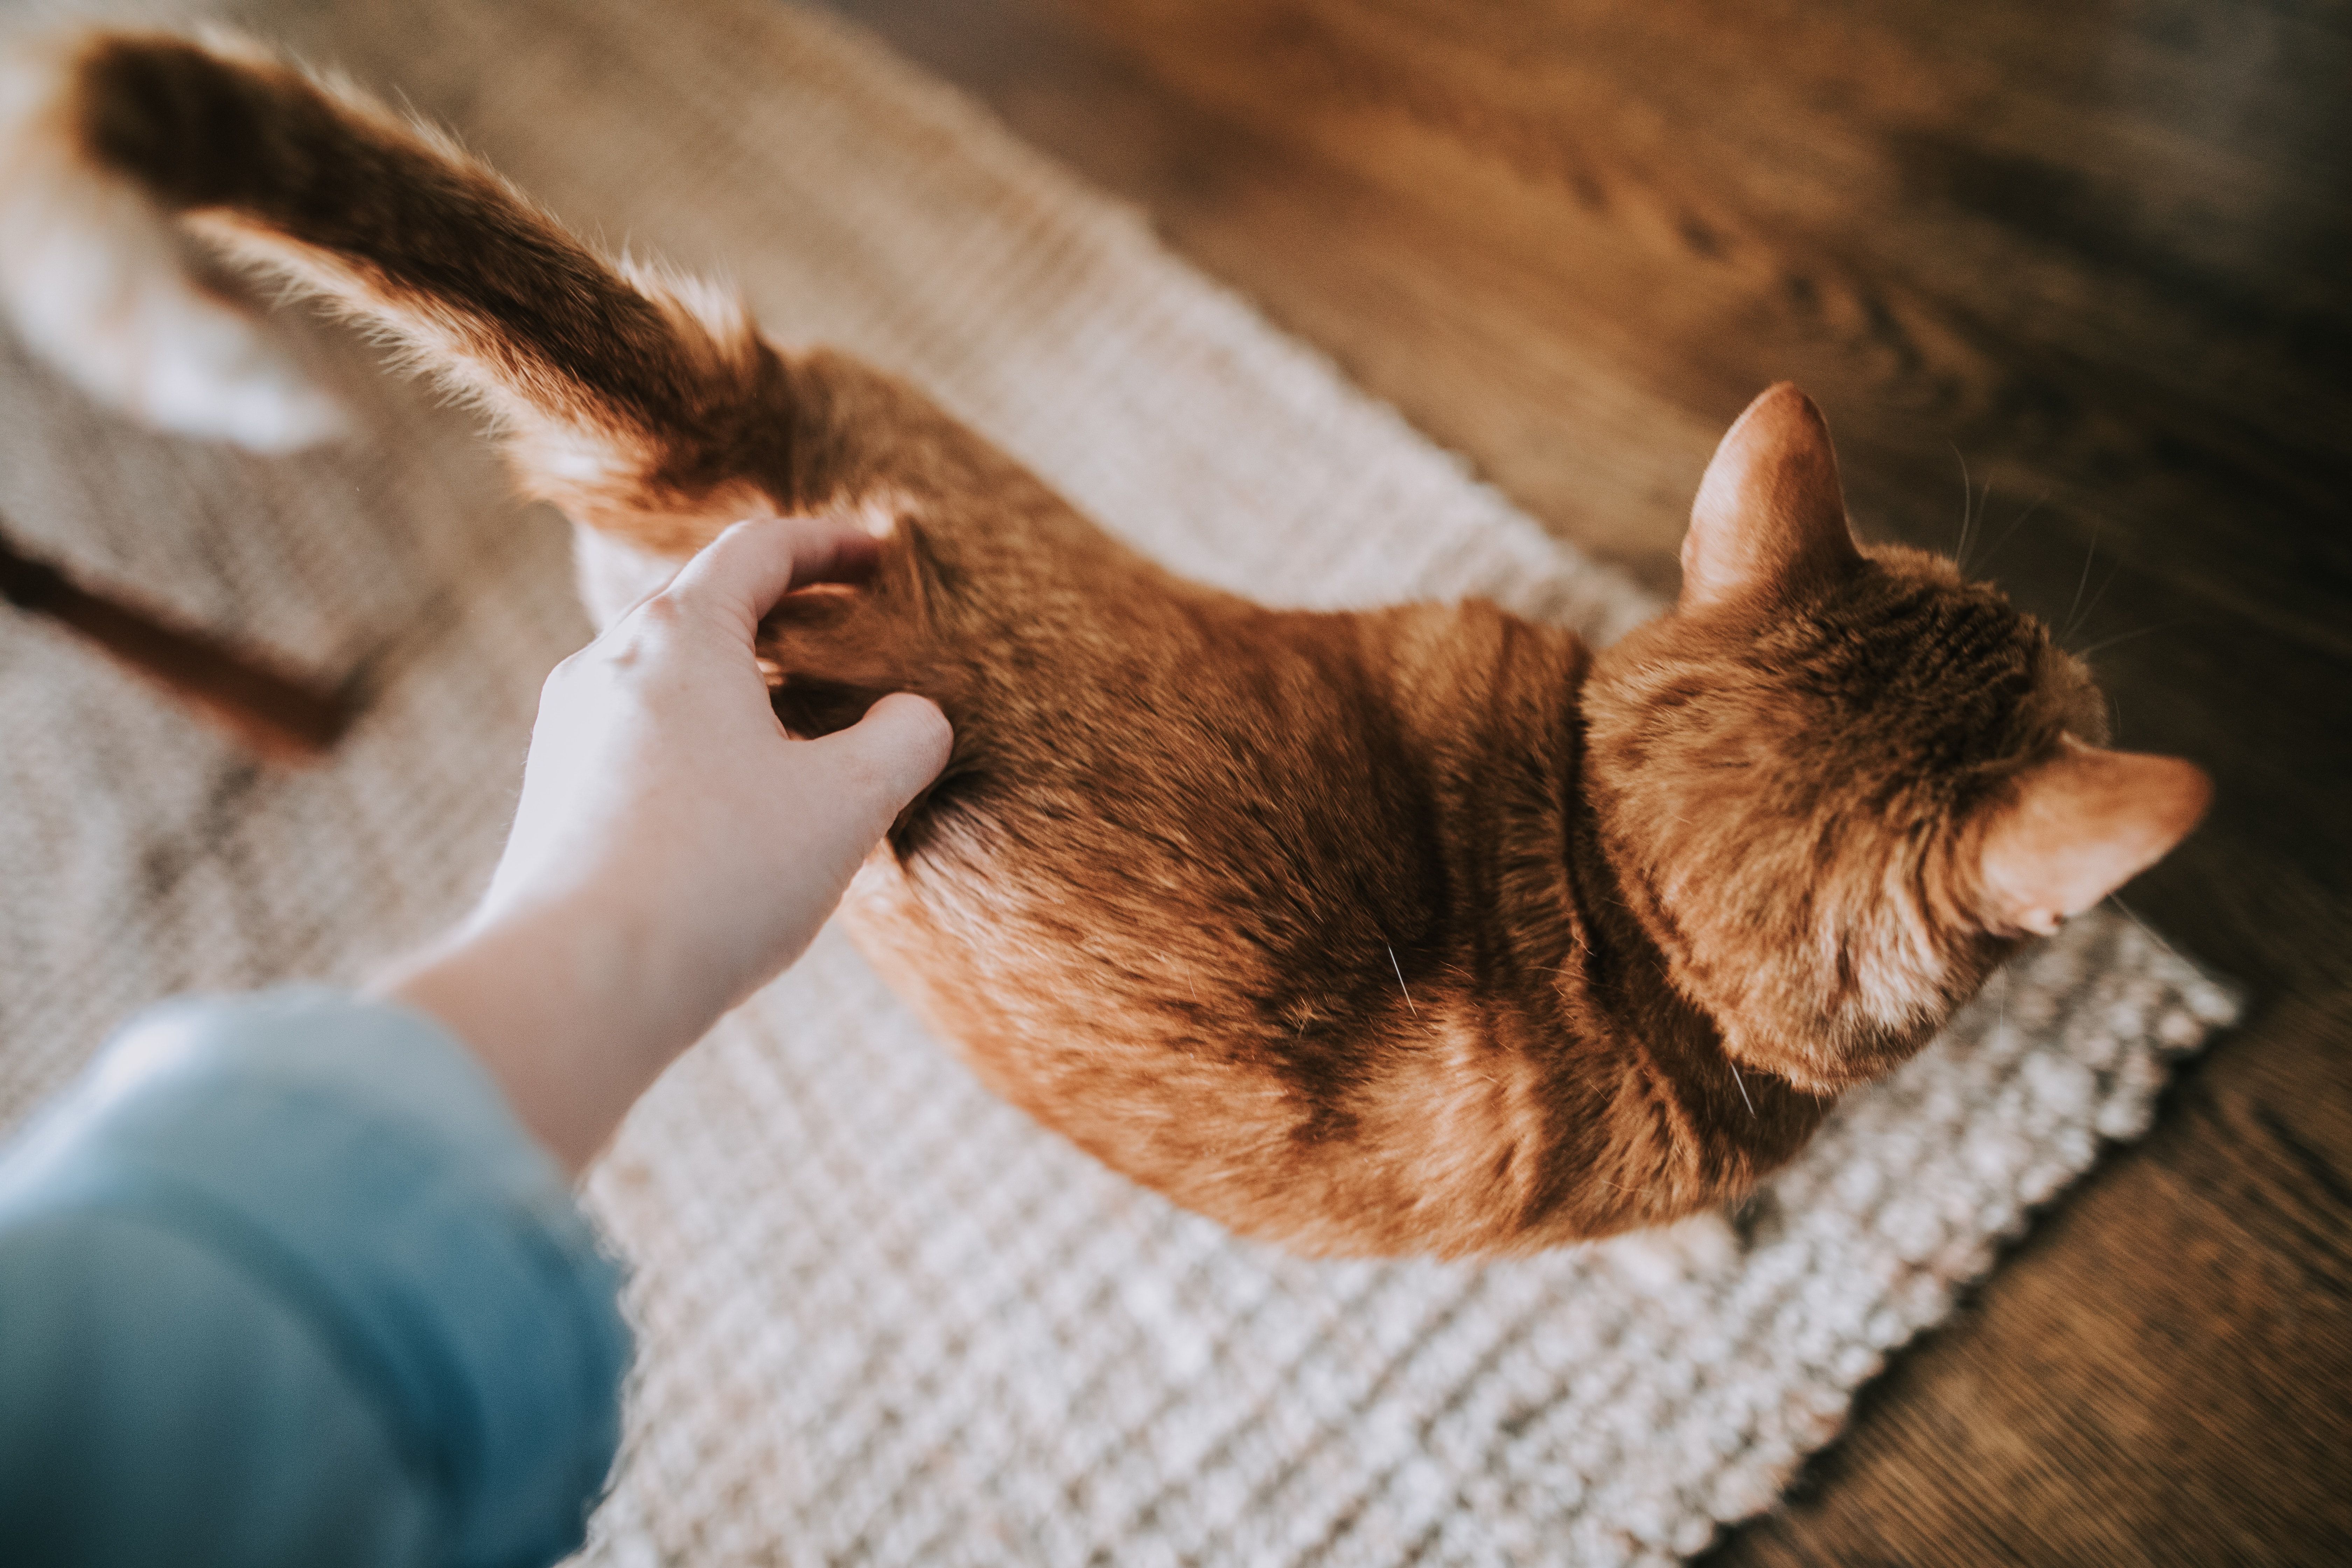 دستی در حال نوازش یک گربه داخل خانه